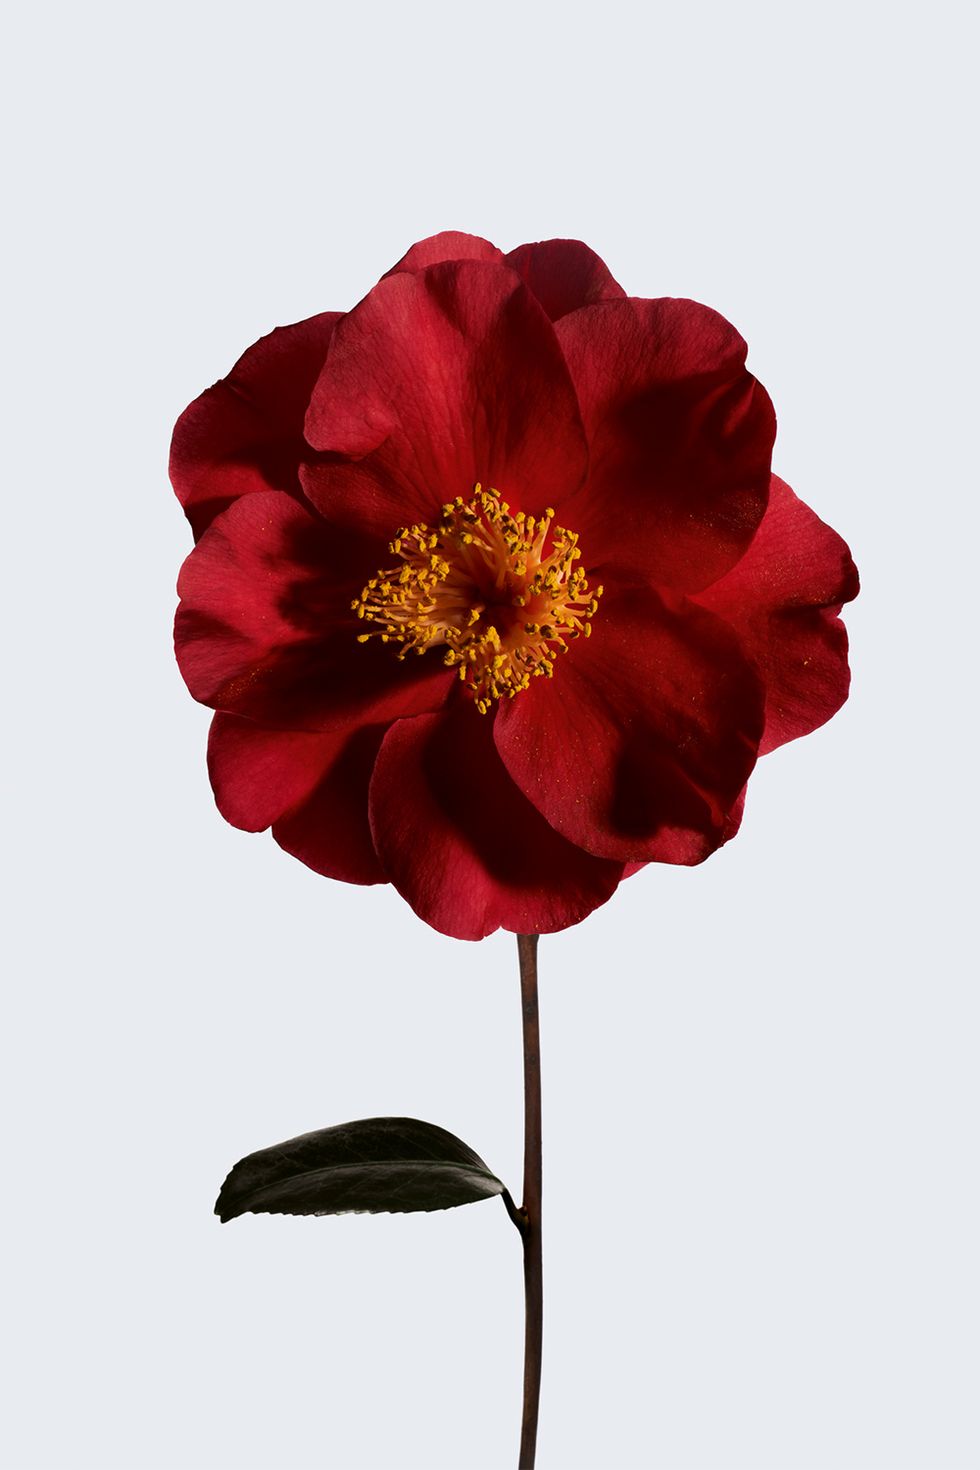 red camellia